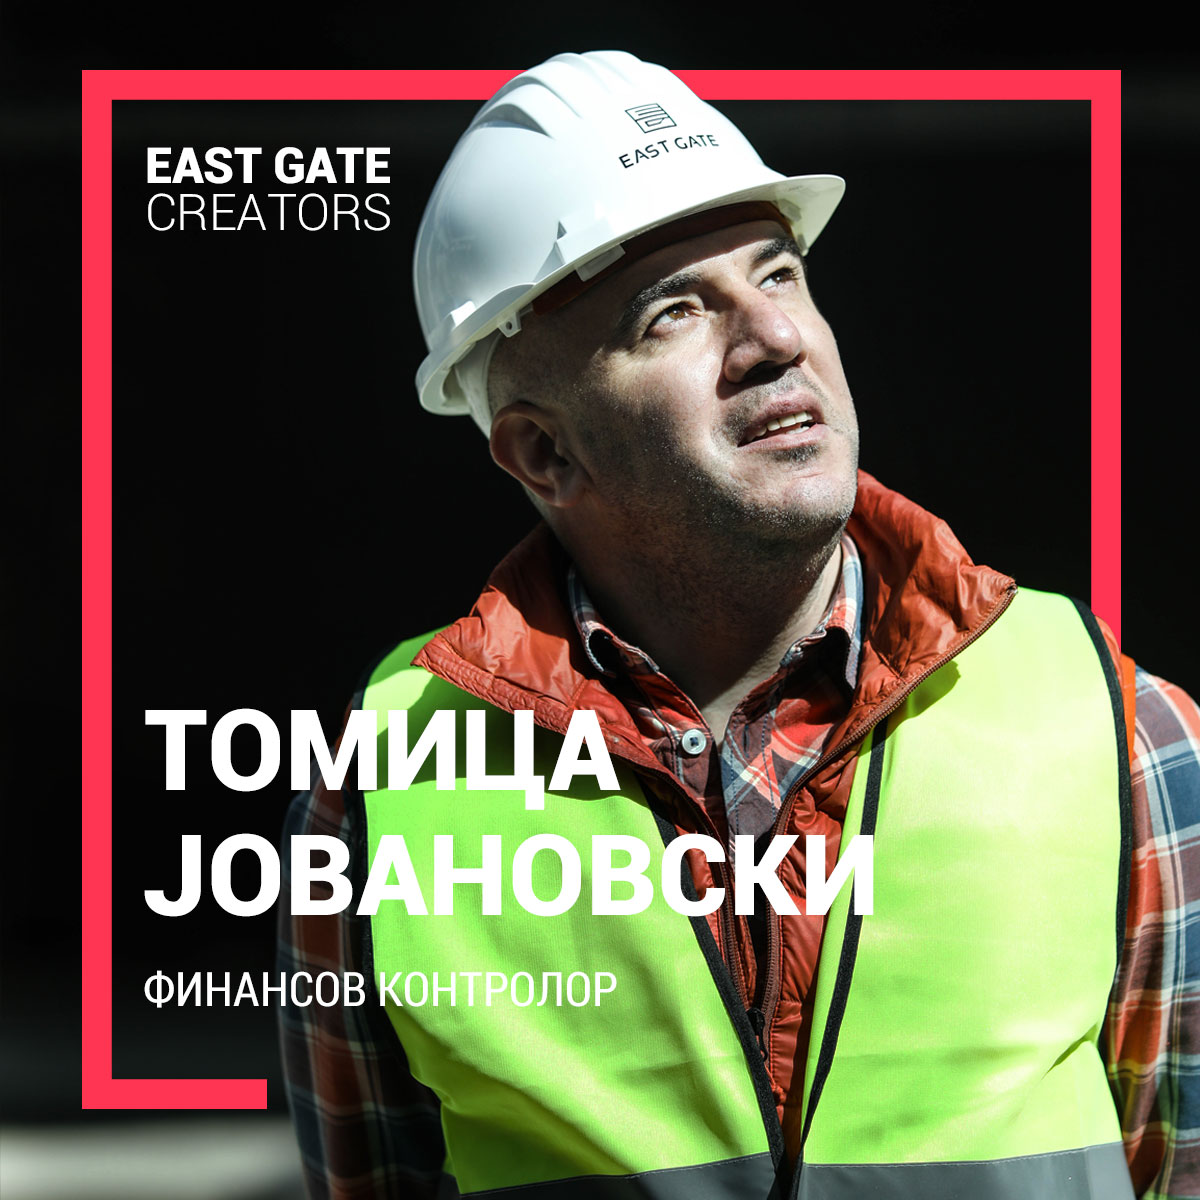 East Gate Creators – Томица Јовановски